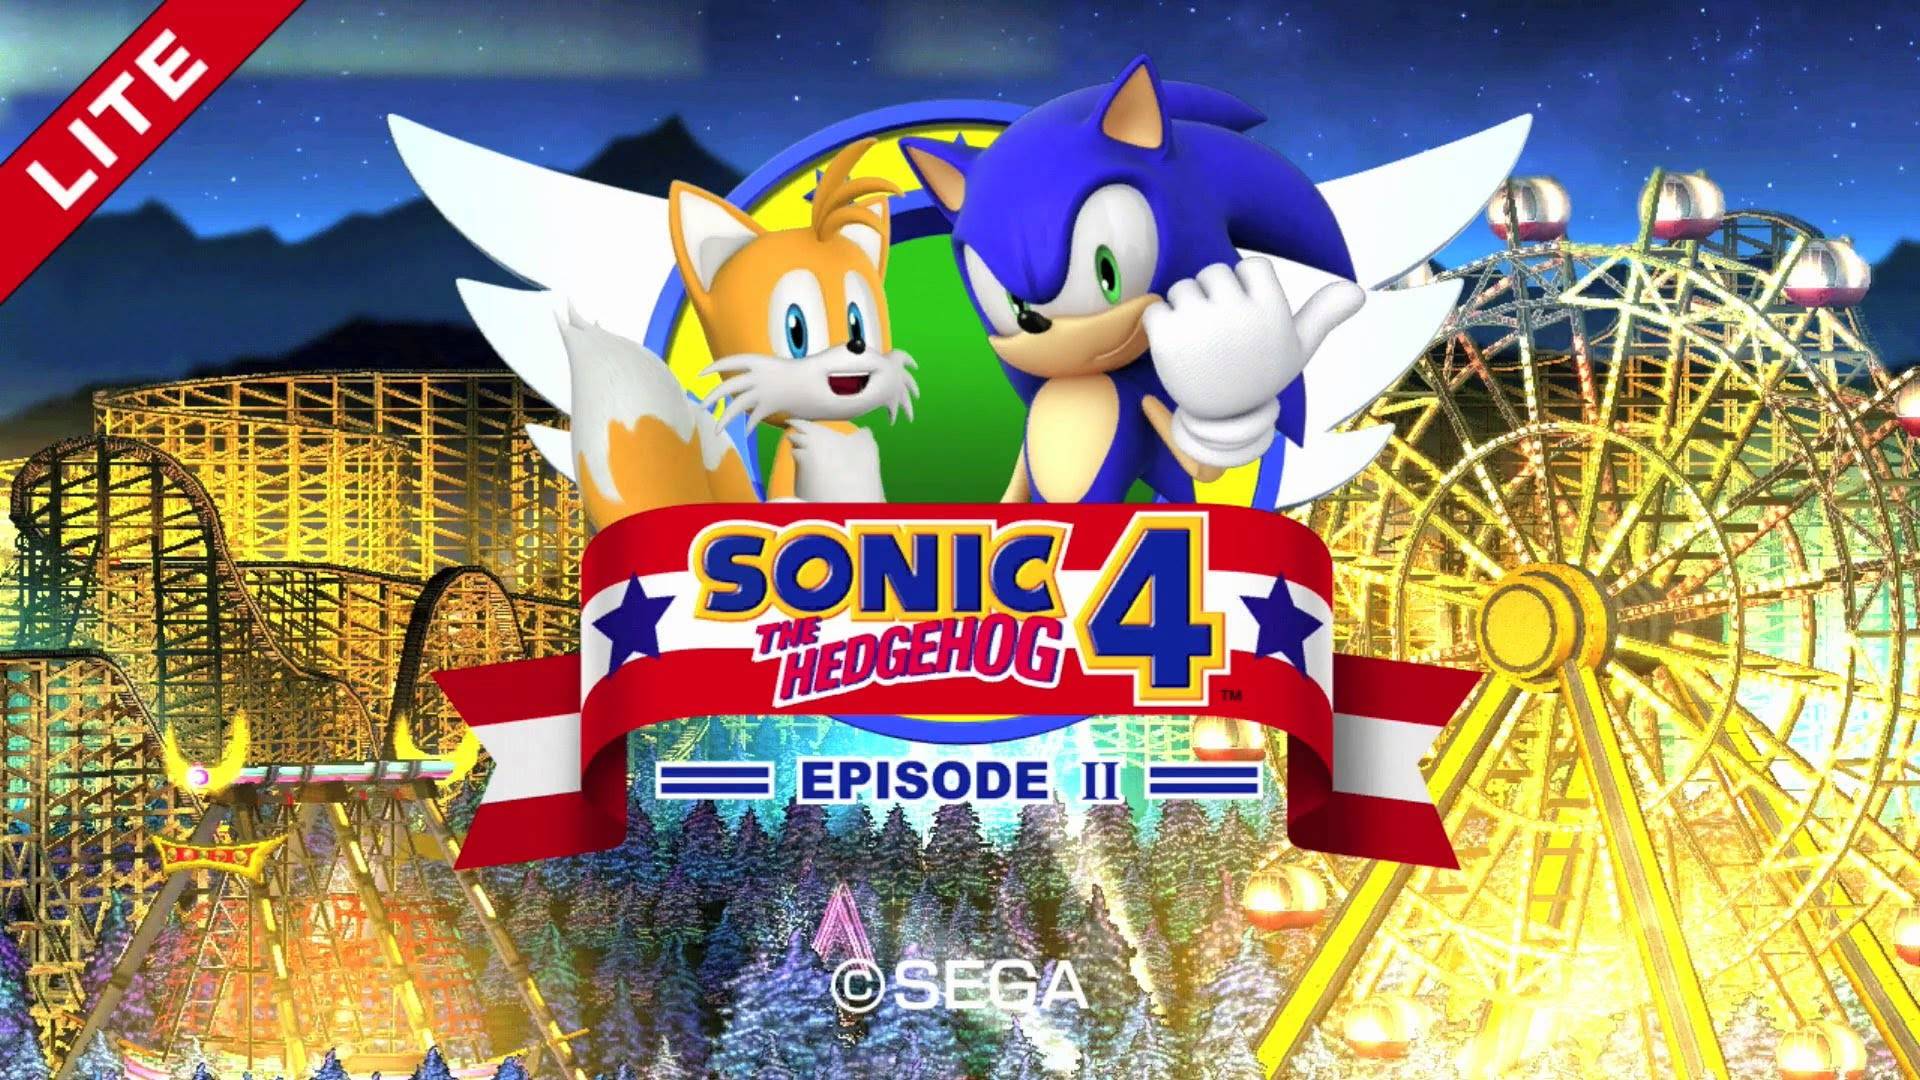 Sonic the Hedgehog 4 - Episode II - Полное прохождение (Longplay)